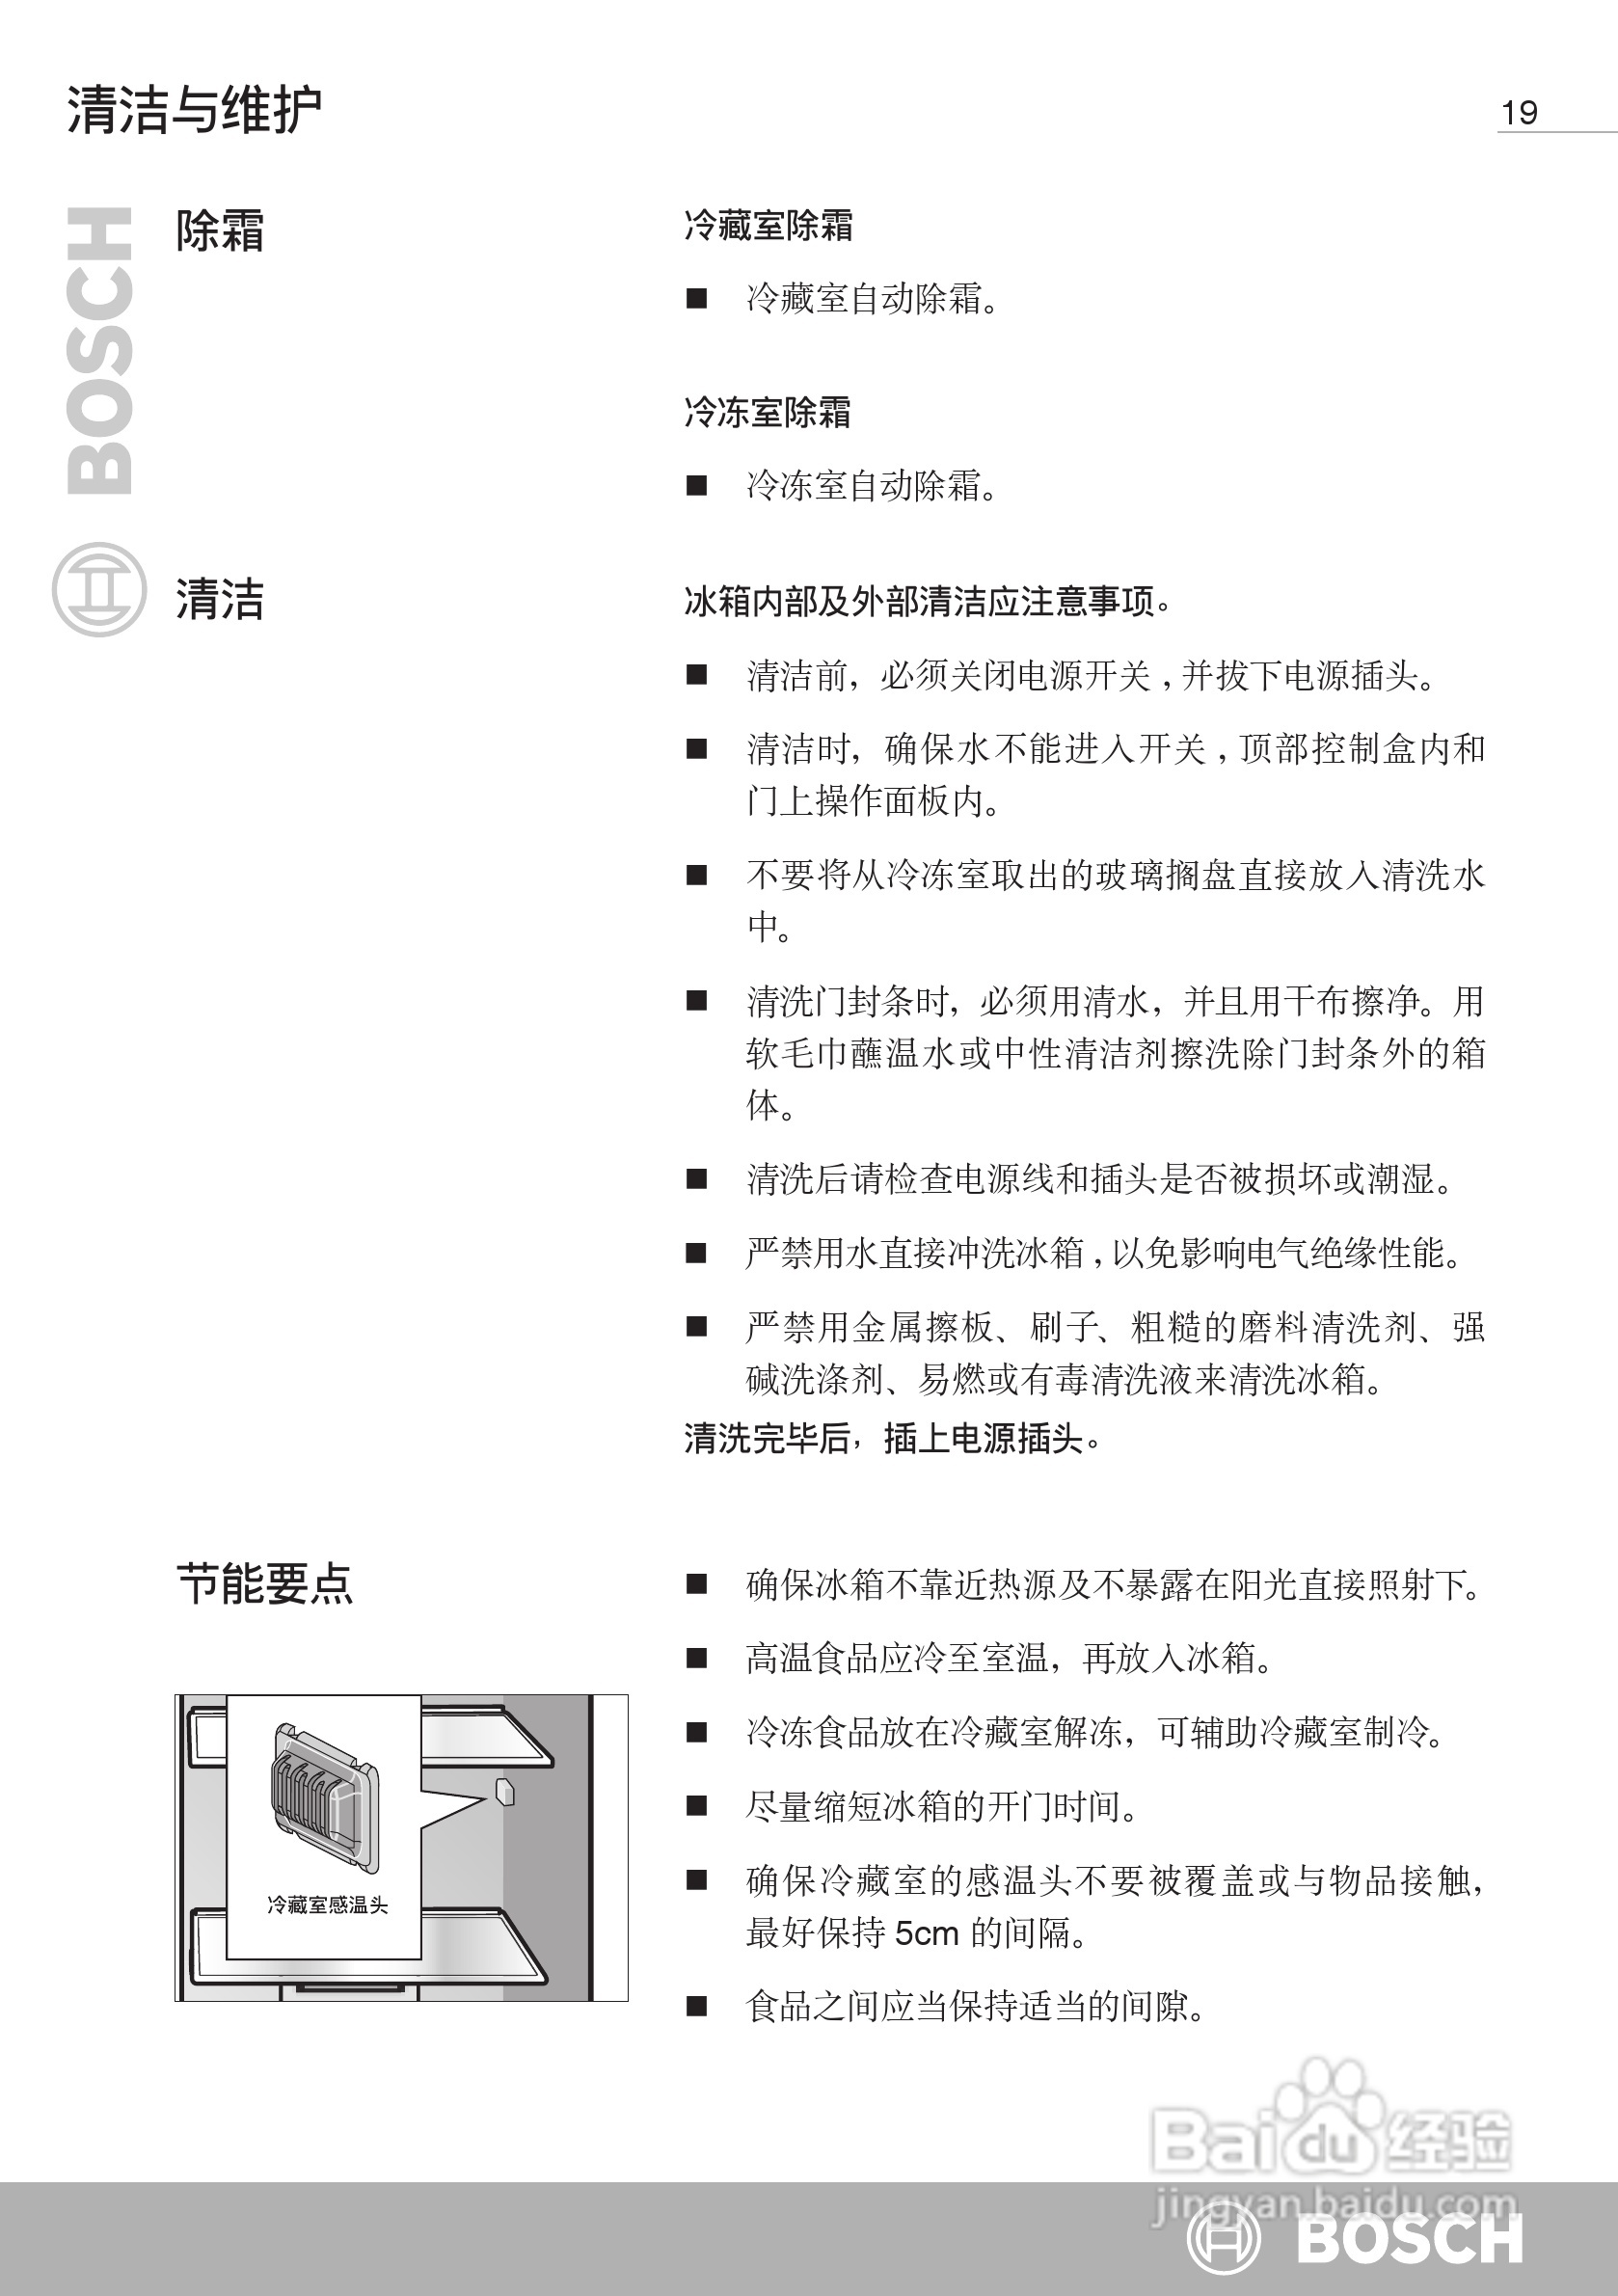 博世kan63v40ti双开门家用电冰箱使用说明书:[2]